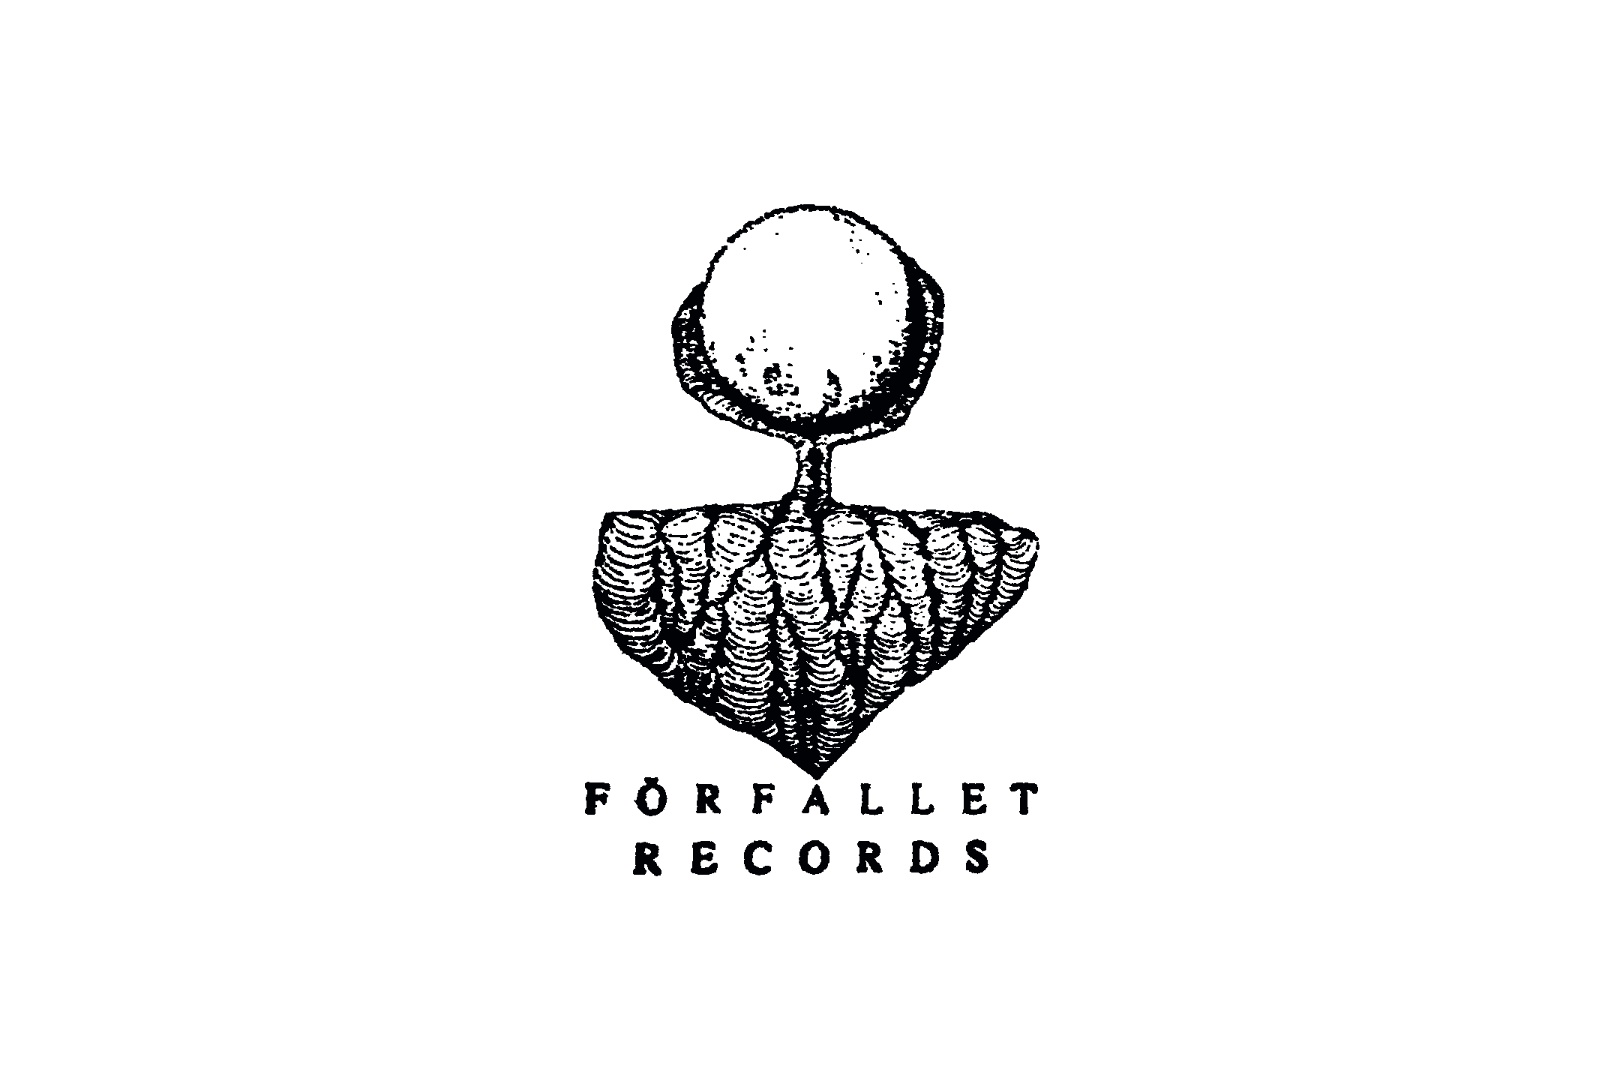 Logo och länk till Förfallet Records, PR kund hos Kniven PR.